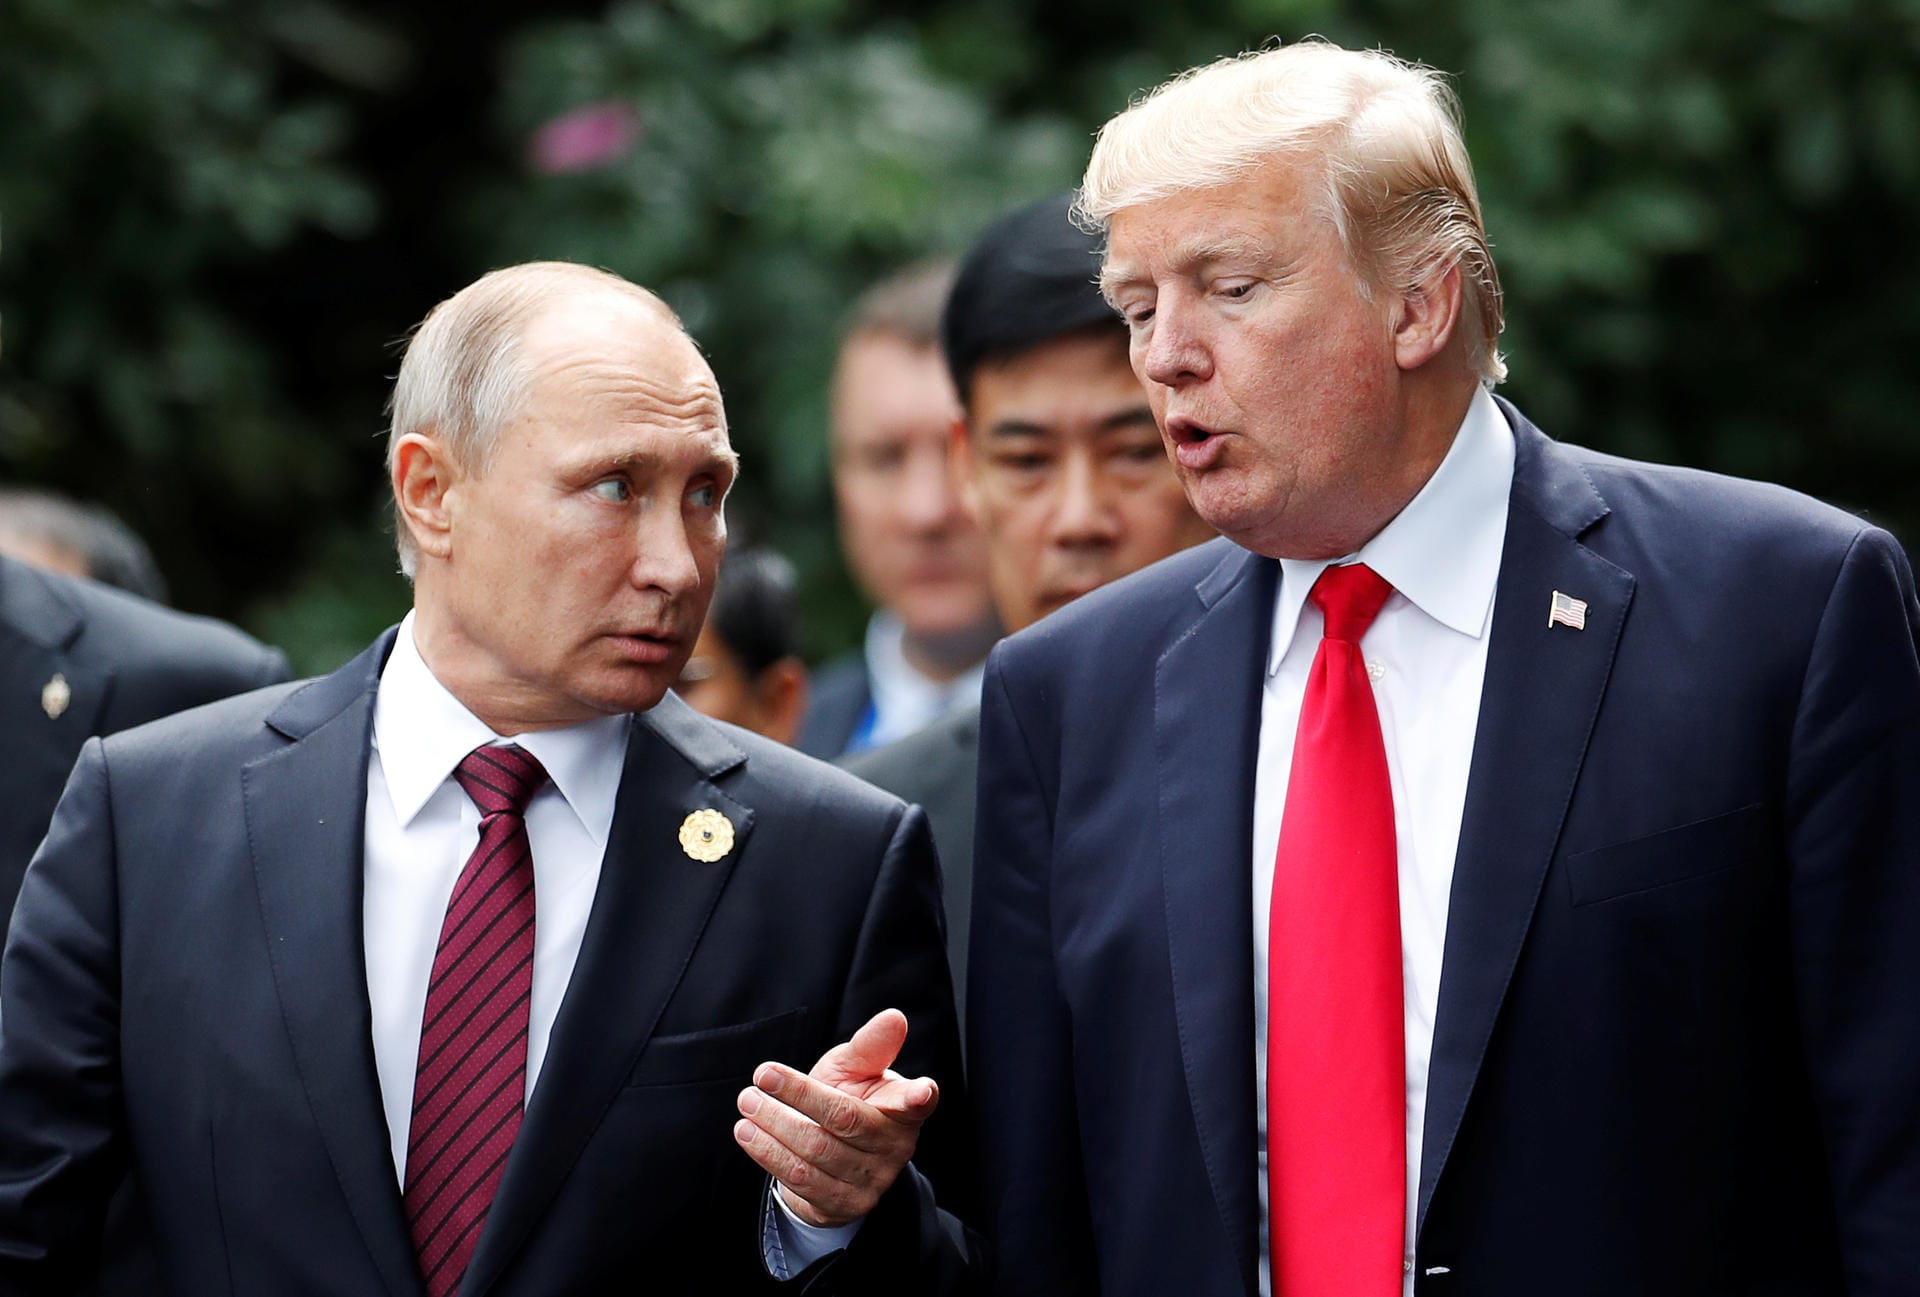 Der russische Präsident Wladmir Putin und US-Präsident Donald Trump mögen auf den ersten blick nicht viel gemeinsam haben – das täuscht aber. Der ehemalige KGB-Agent und das TV-Sternchen verbindet einiges. Zum Beispiel...